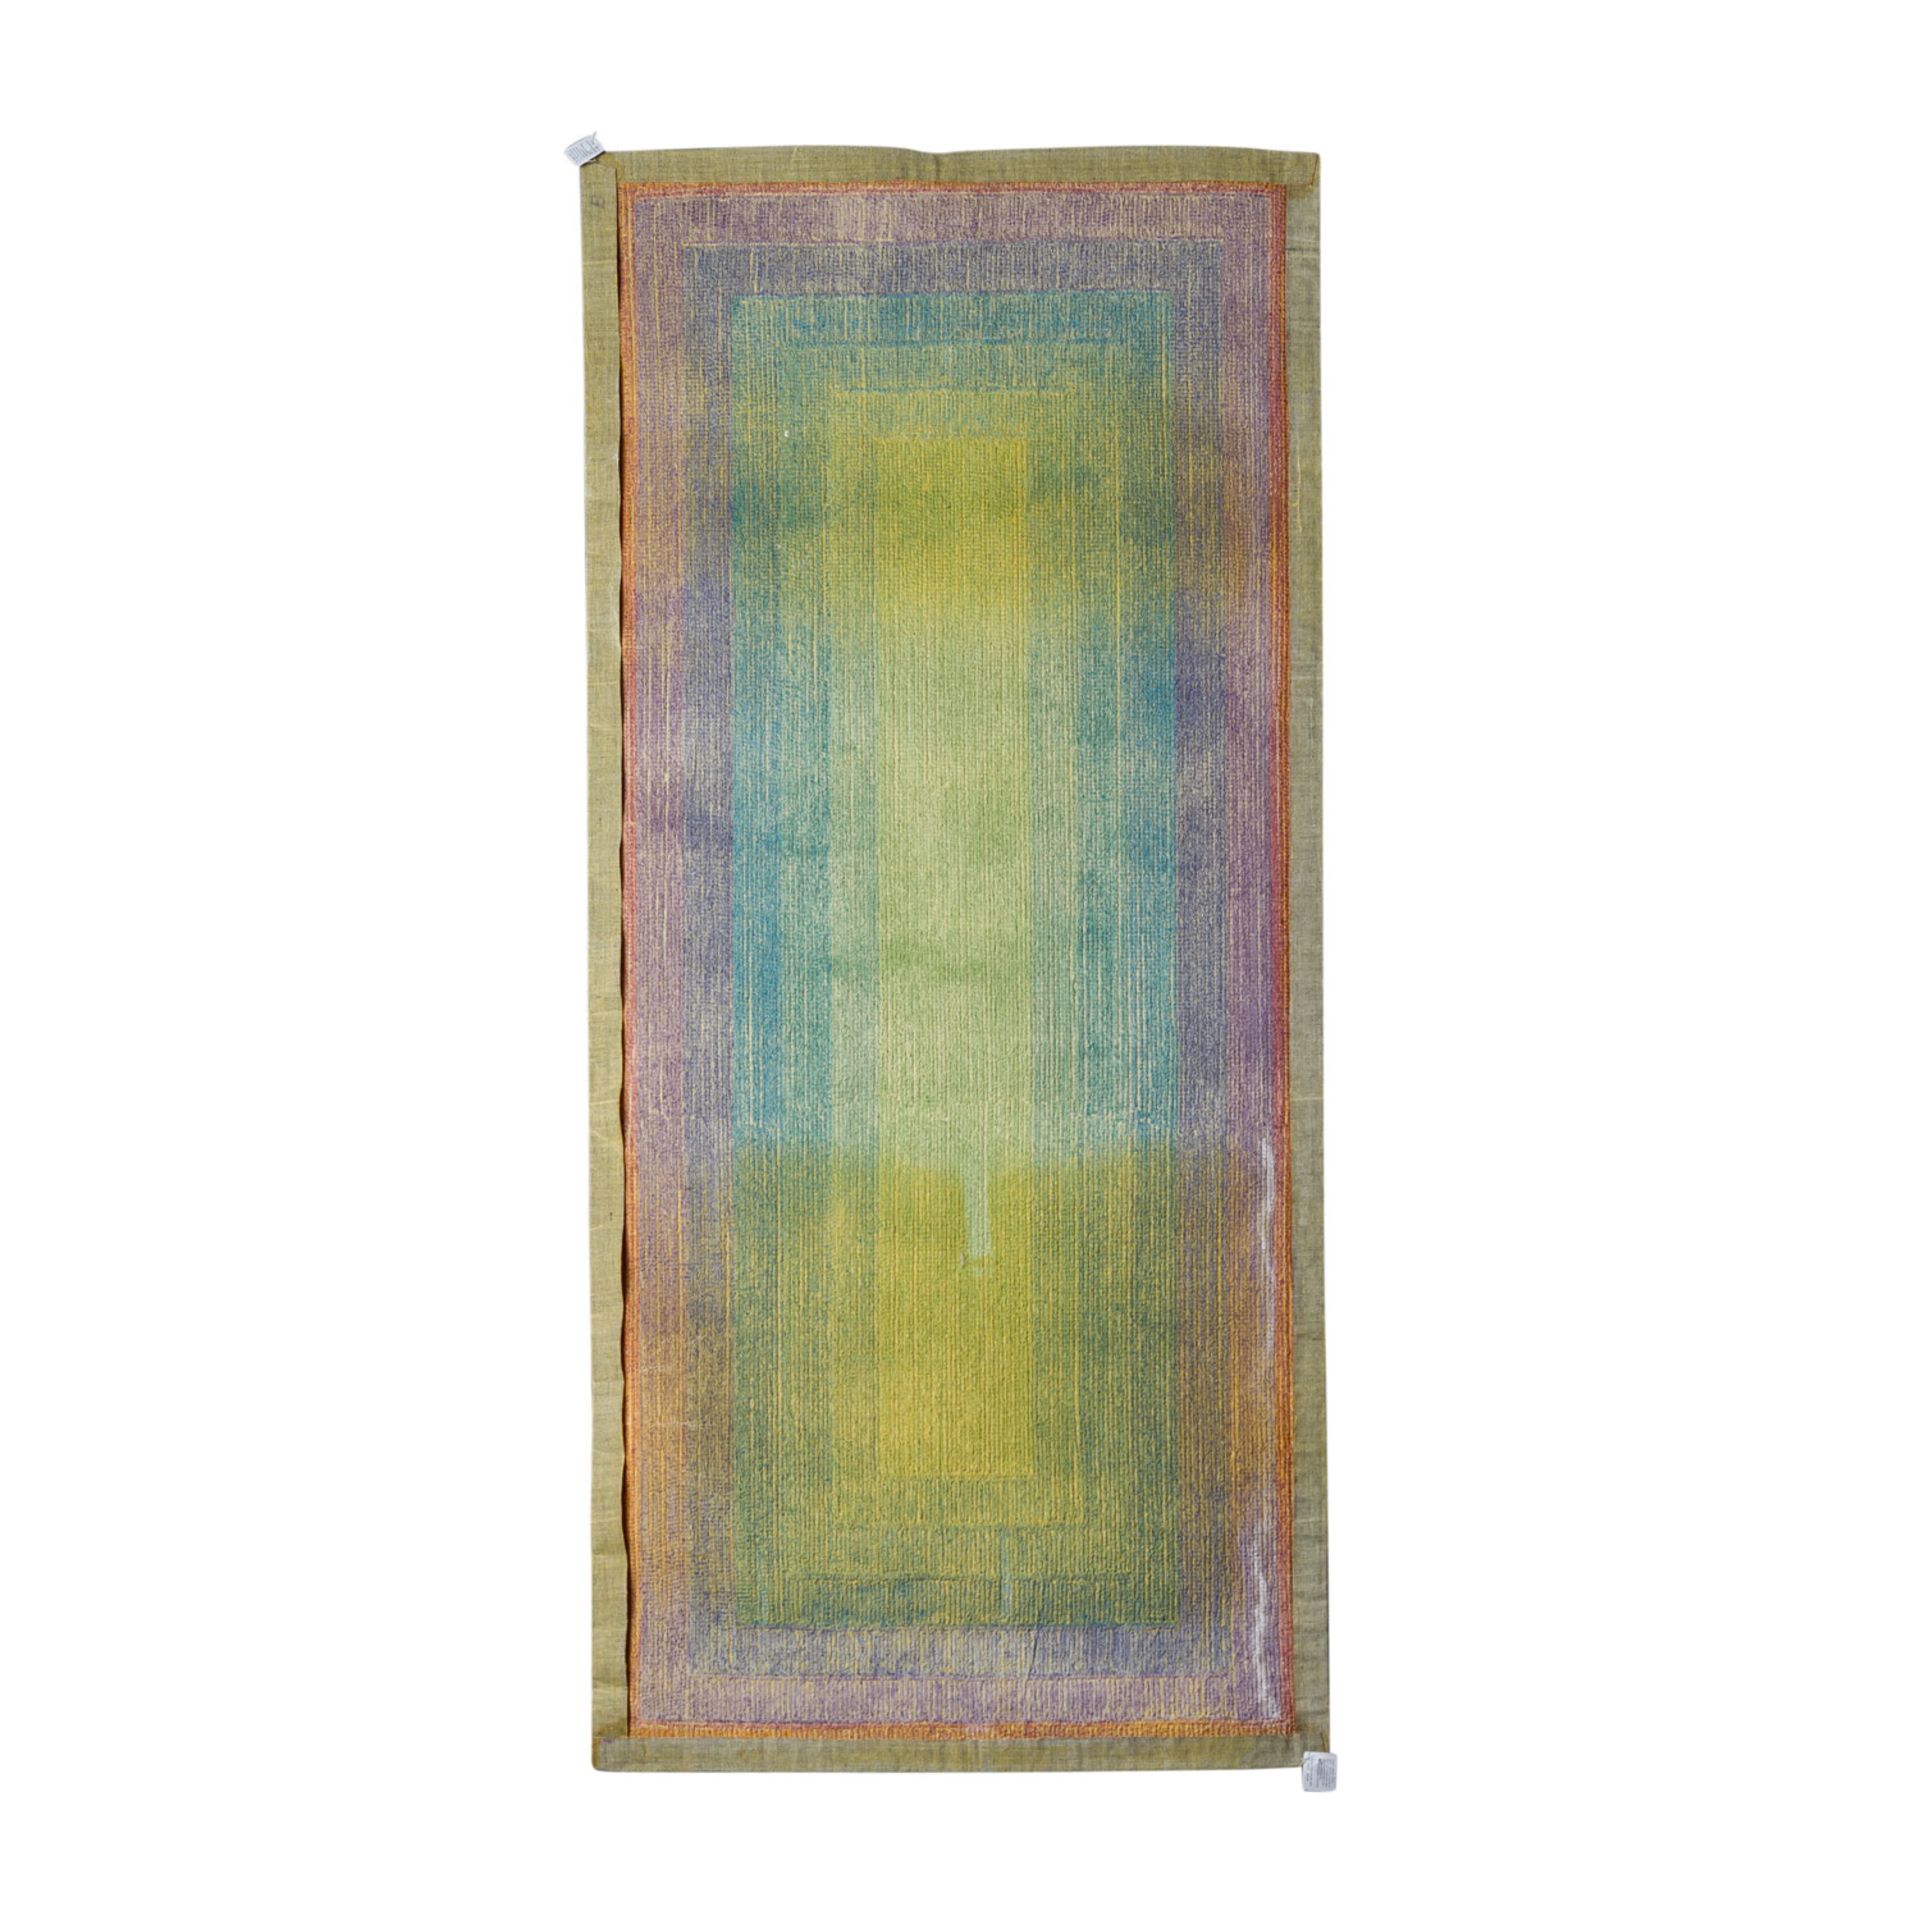 Design Teppich aus Wolle, 1970er Jahre, 198x90 cm.Im Op-Art Stil in den Farben Grün, Blau und - Bild 2 aus 3